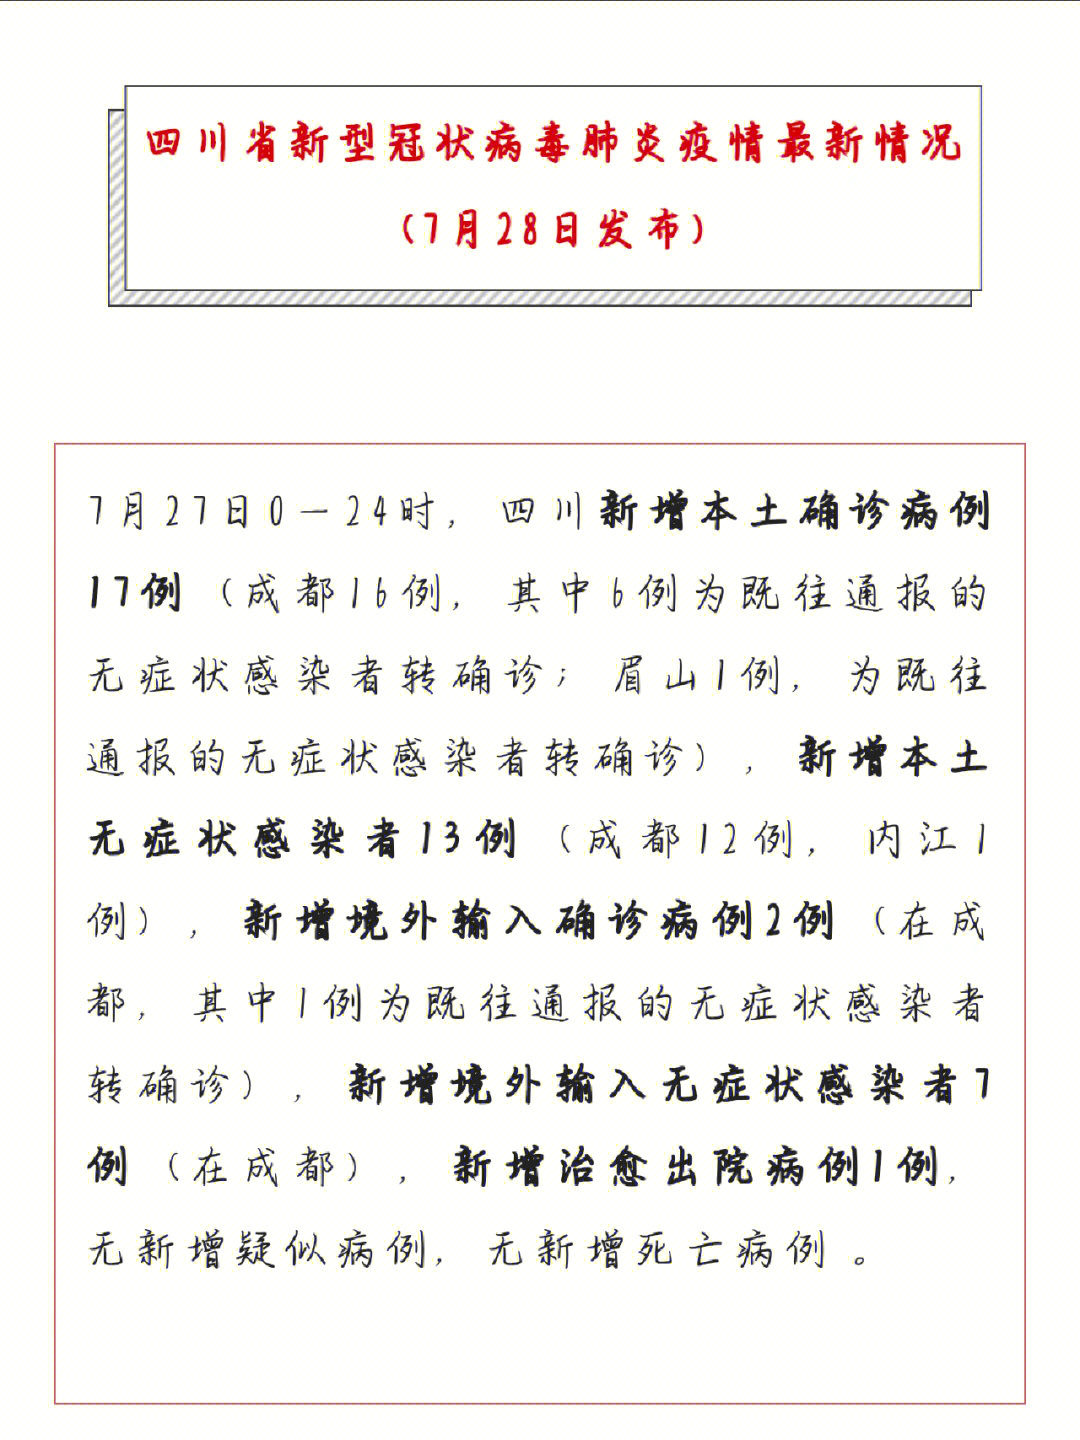 四川省新型冠状病毒肺炎疫情最新情况(7月28日发布)成都在家人员多